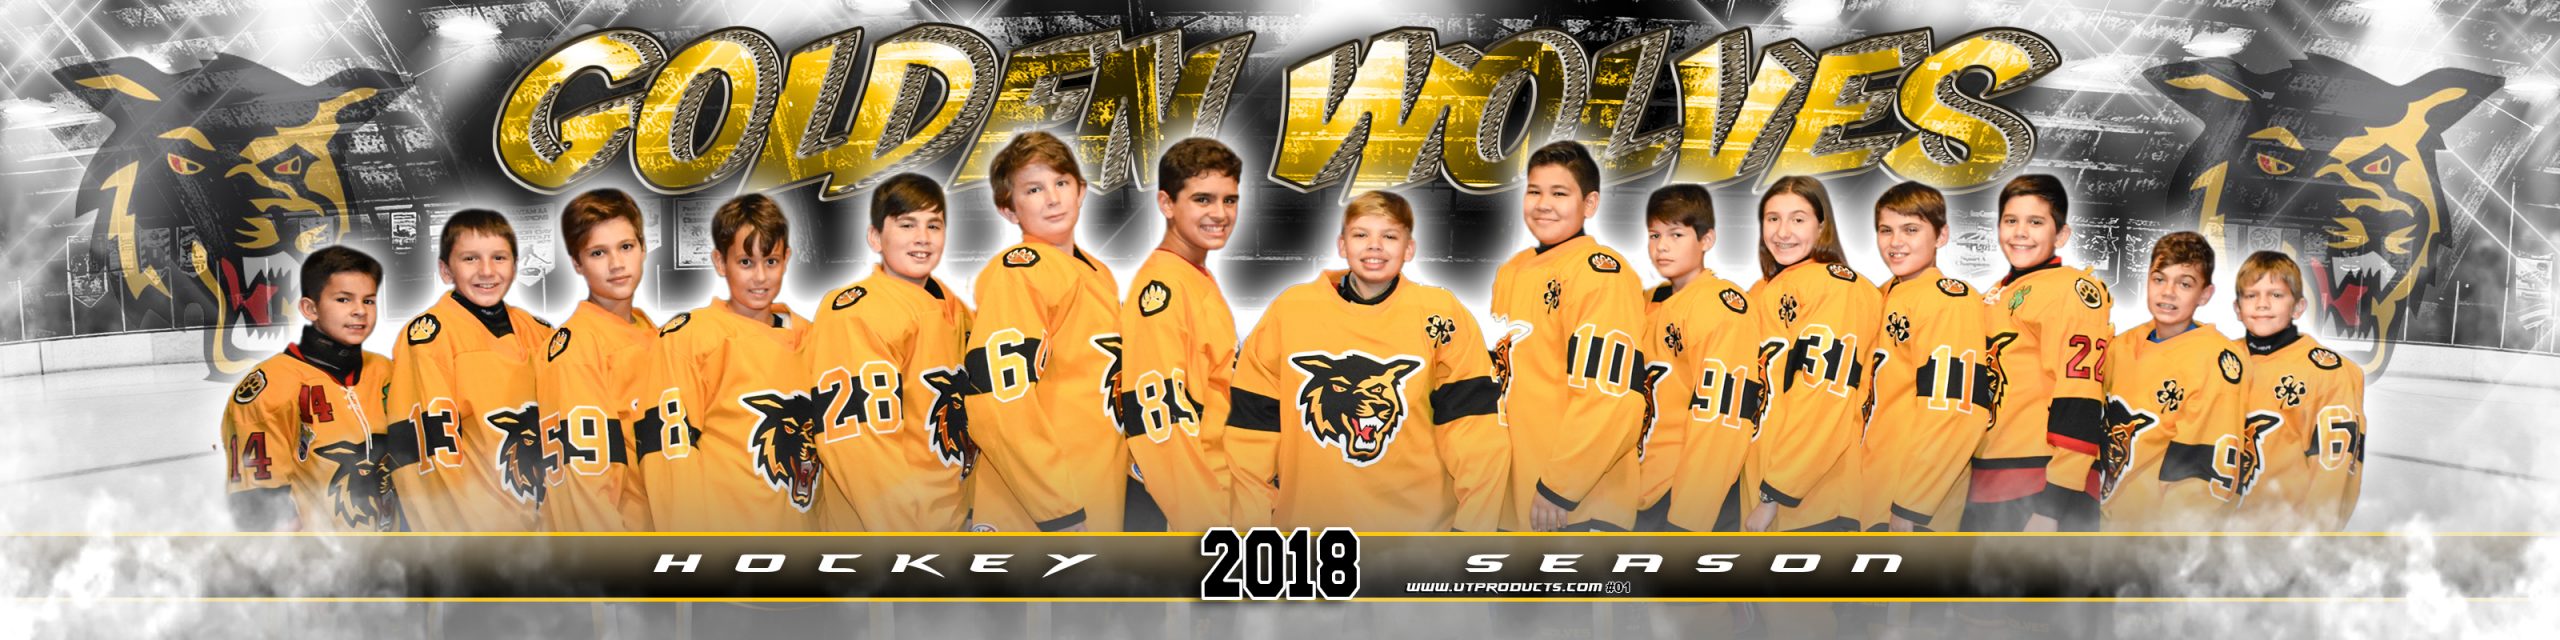 Golden Wolves Team